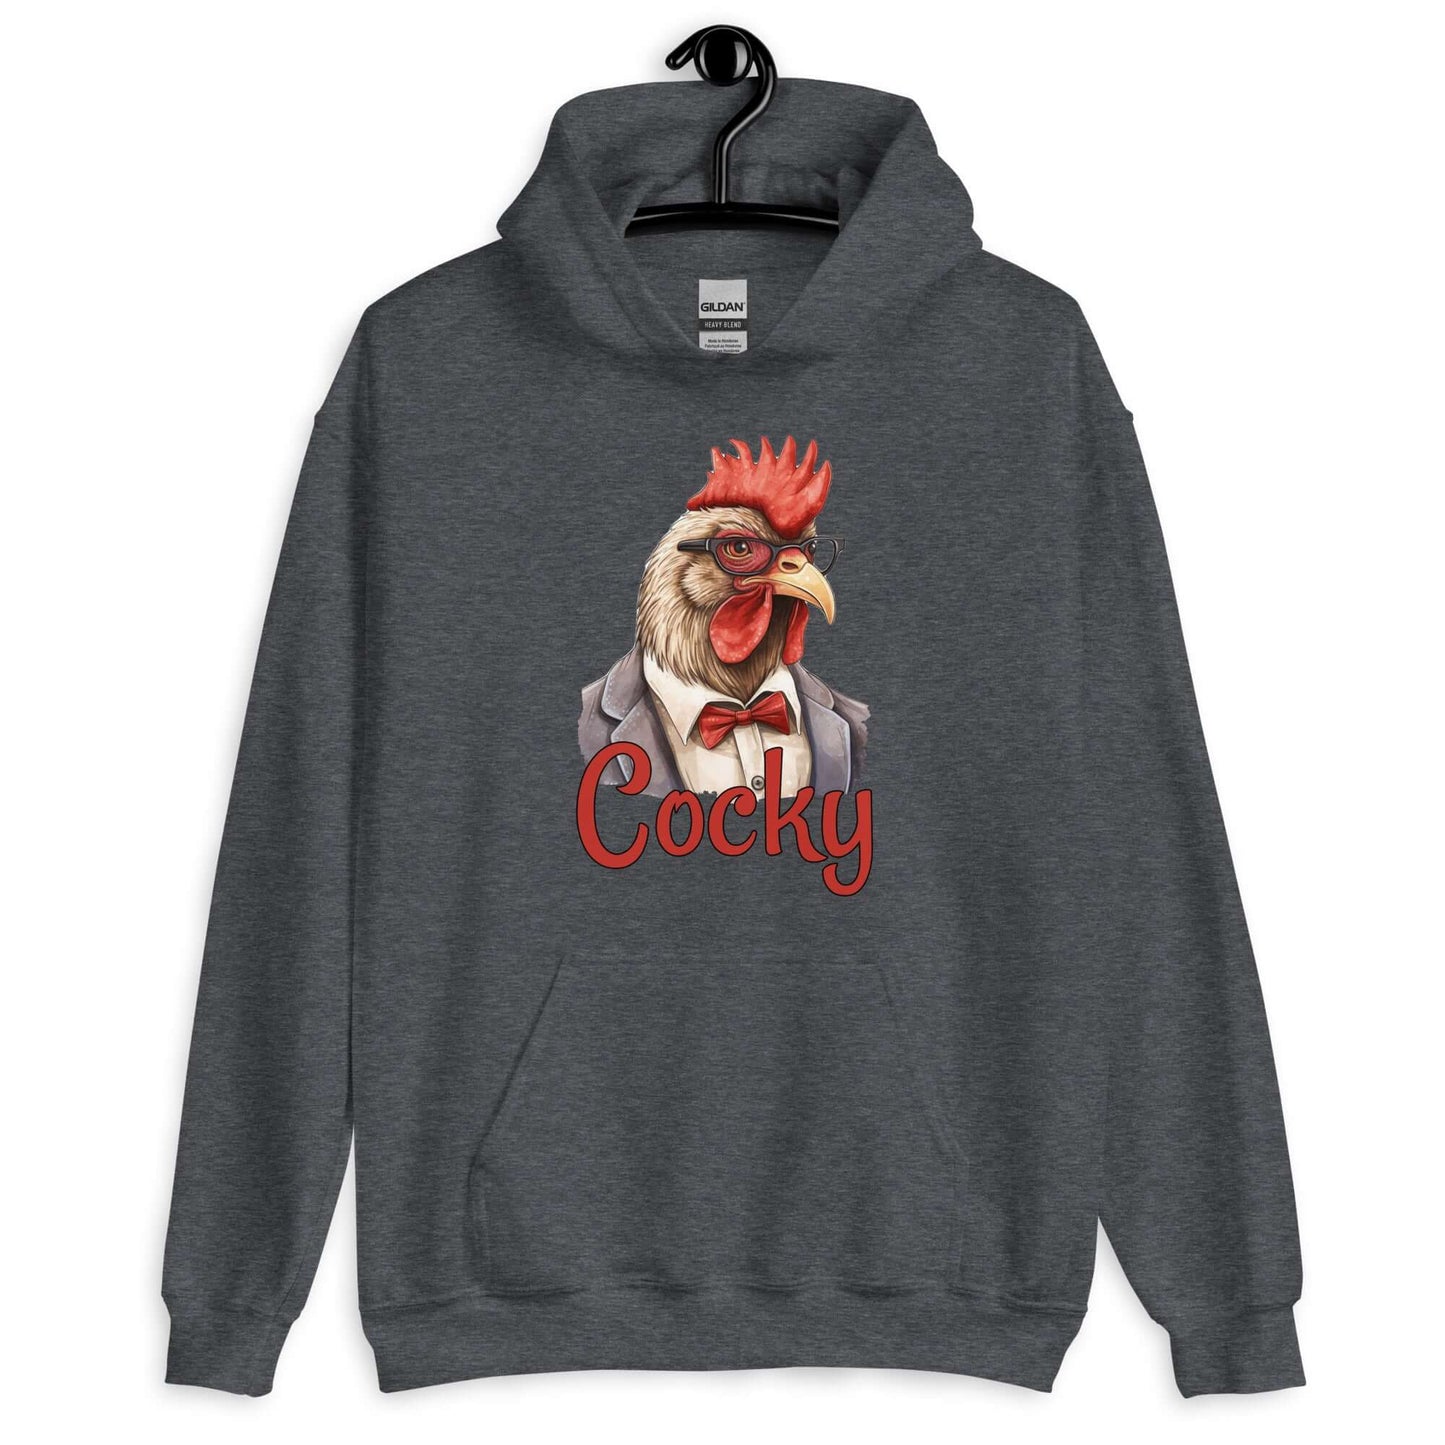 Arrogant rooster hoodie sweatshirt